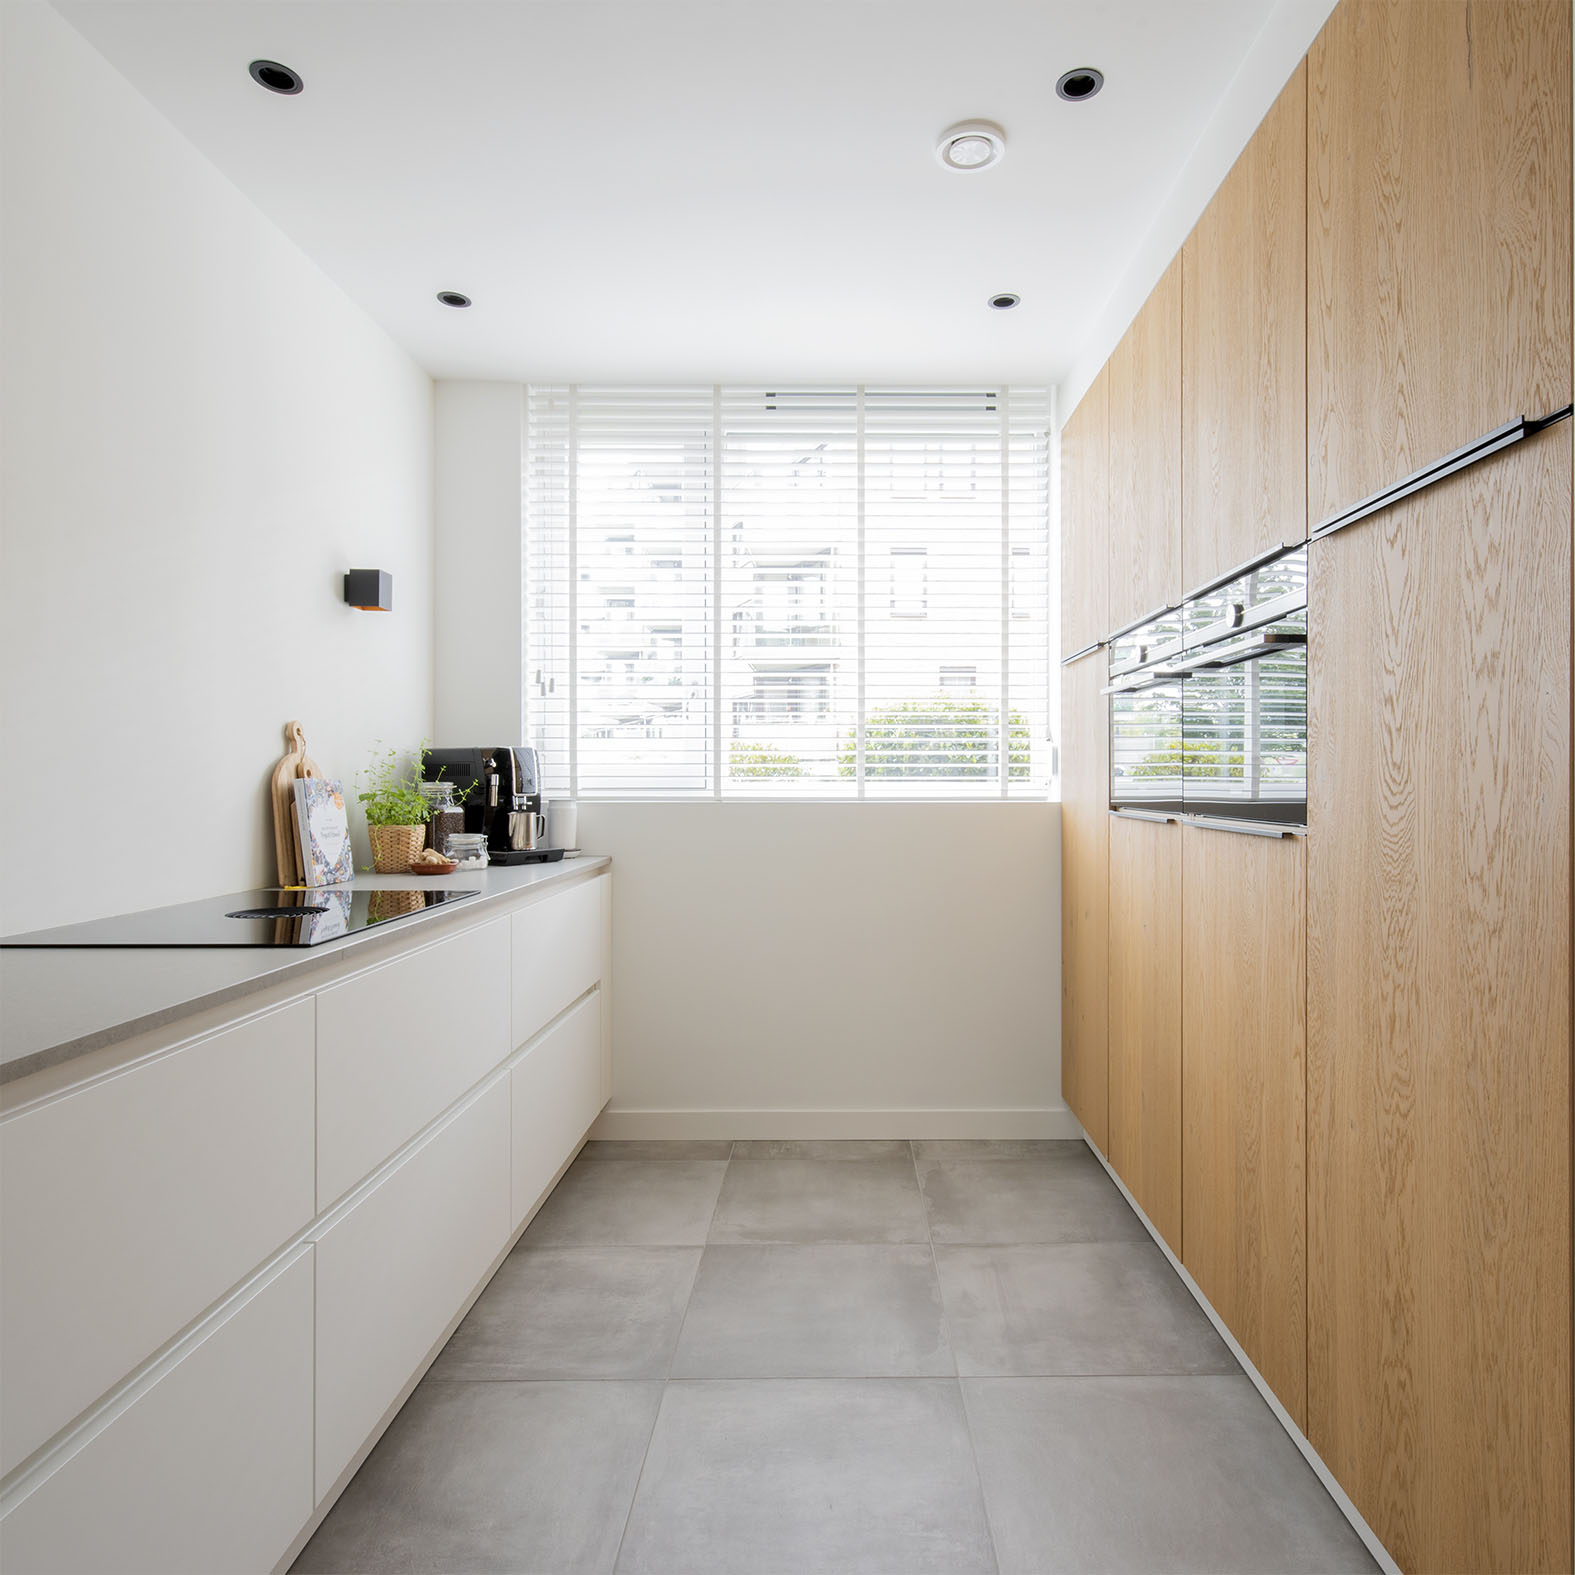 Interieuradvies Drunen keuken interieurontwerp hout wit grijs